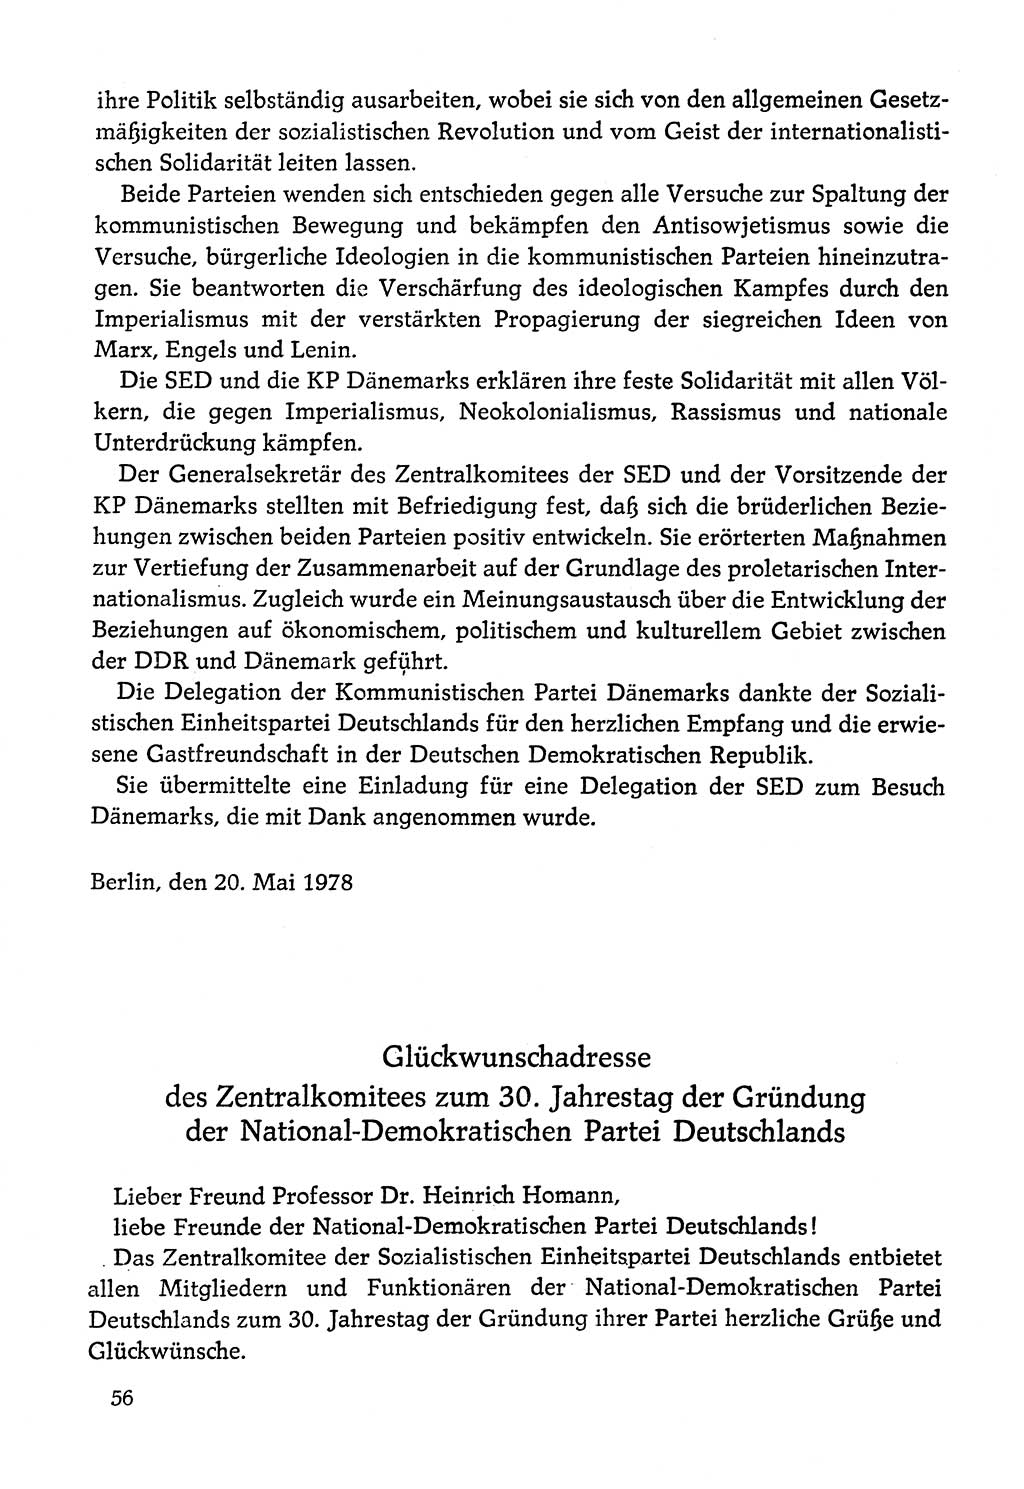 Dokumente der Sozialistischen Einheitspartei Deutschlands (SED) [Deutsche Demokratische Republik (DDR)] 1978-1979, Seite 56 (Dok. SED DDR 1978-1979, S. 56)